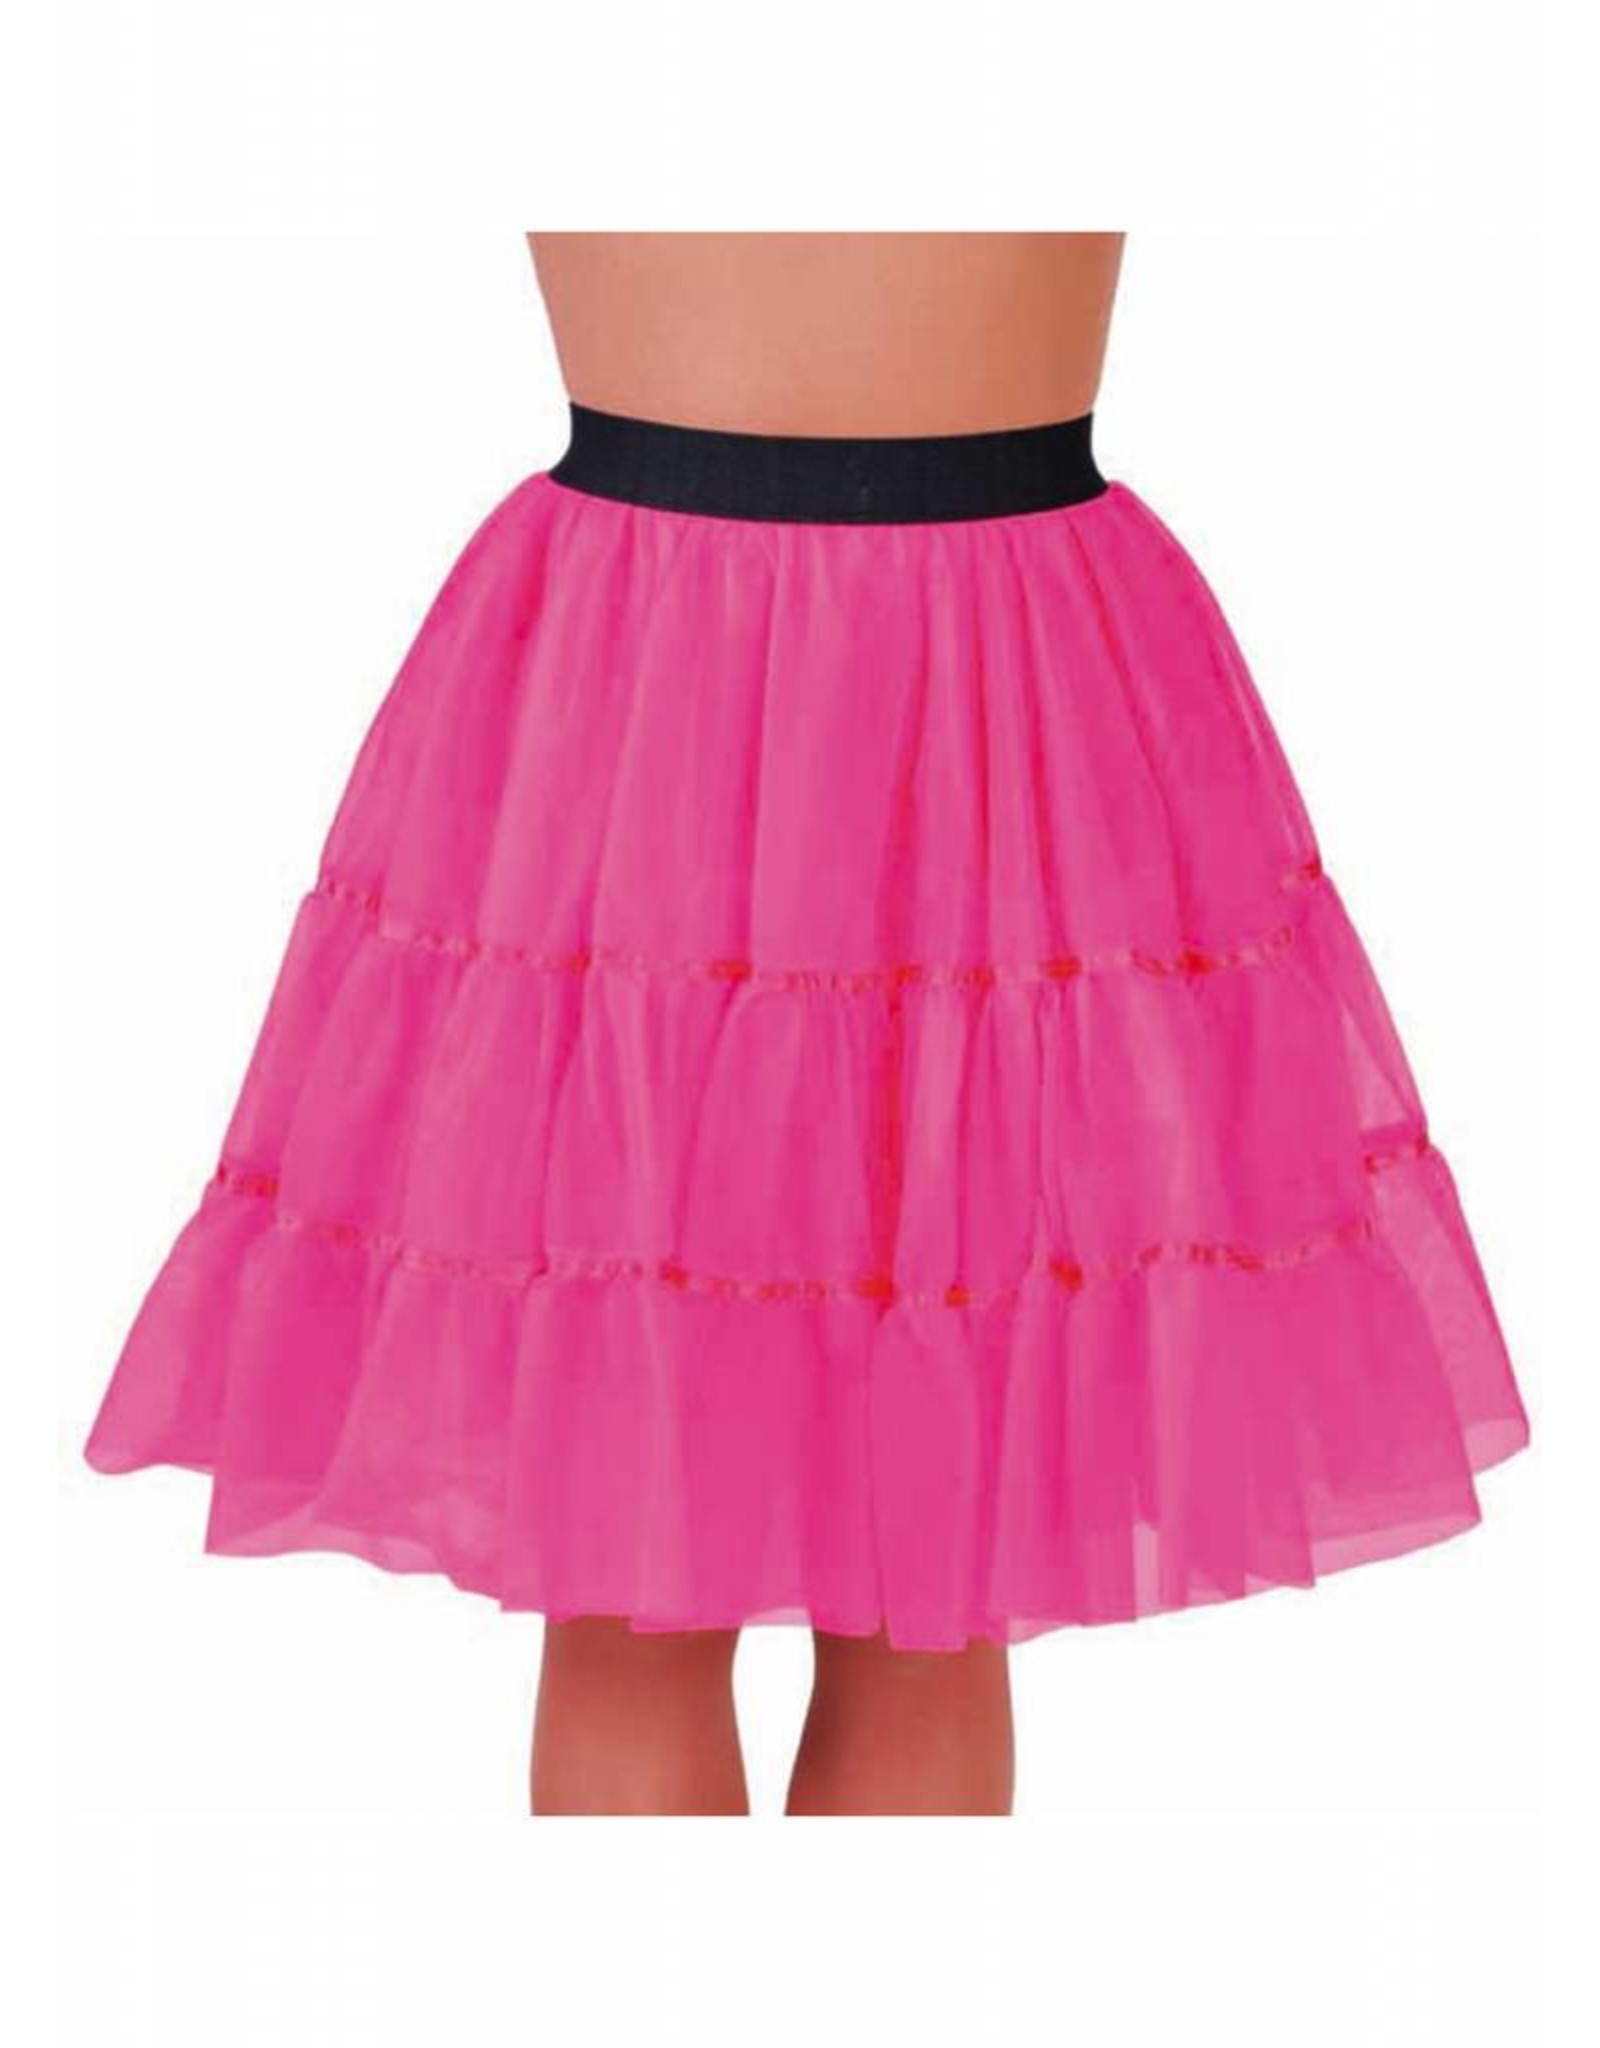 Petticoat pink middel lang, elastique